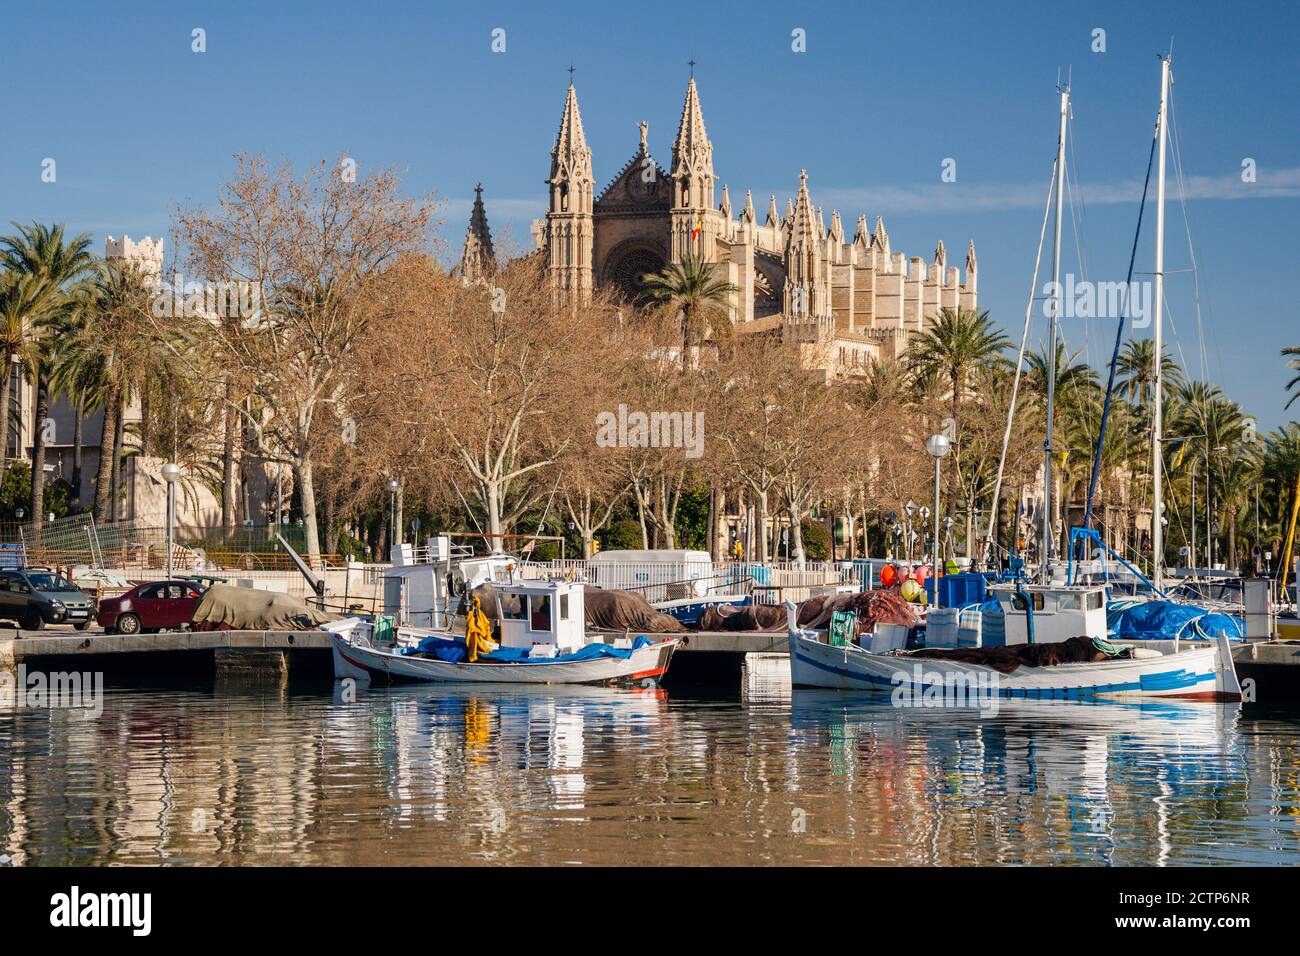 Catedral de Palma desde Moll de la Riba, Palma, mallorca, islas baleares, españa, europa Stock Photo